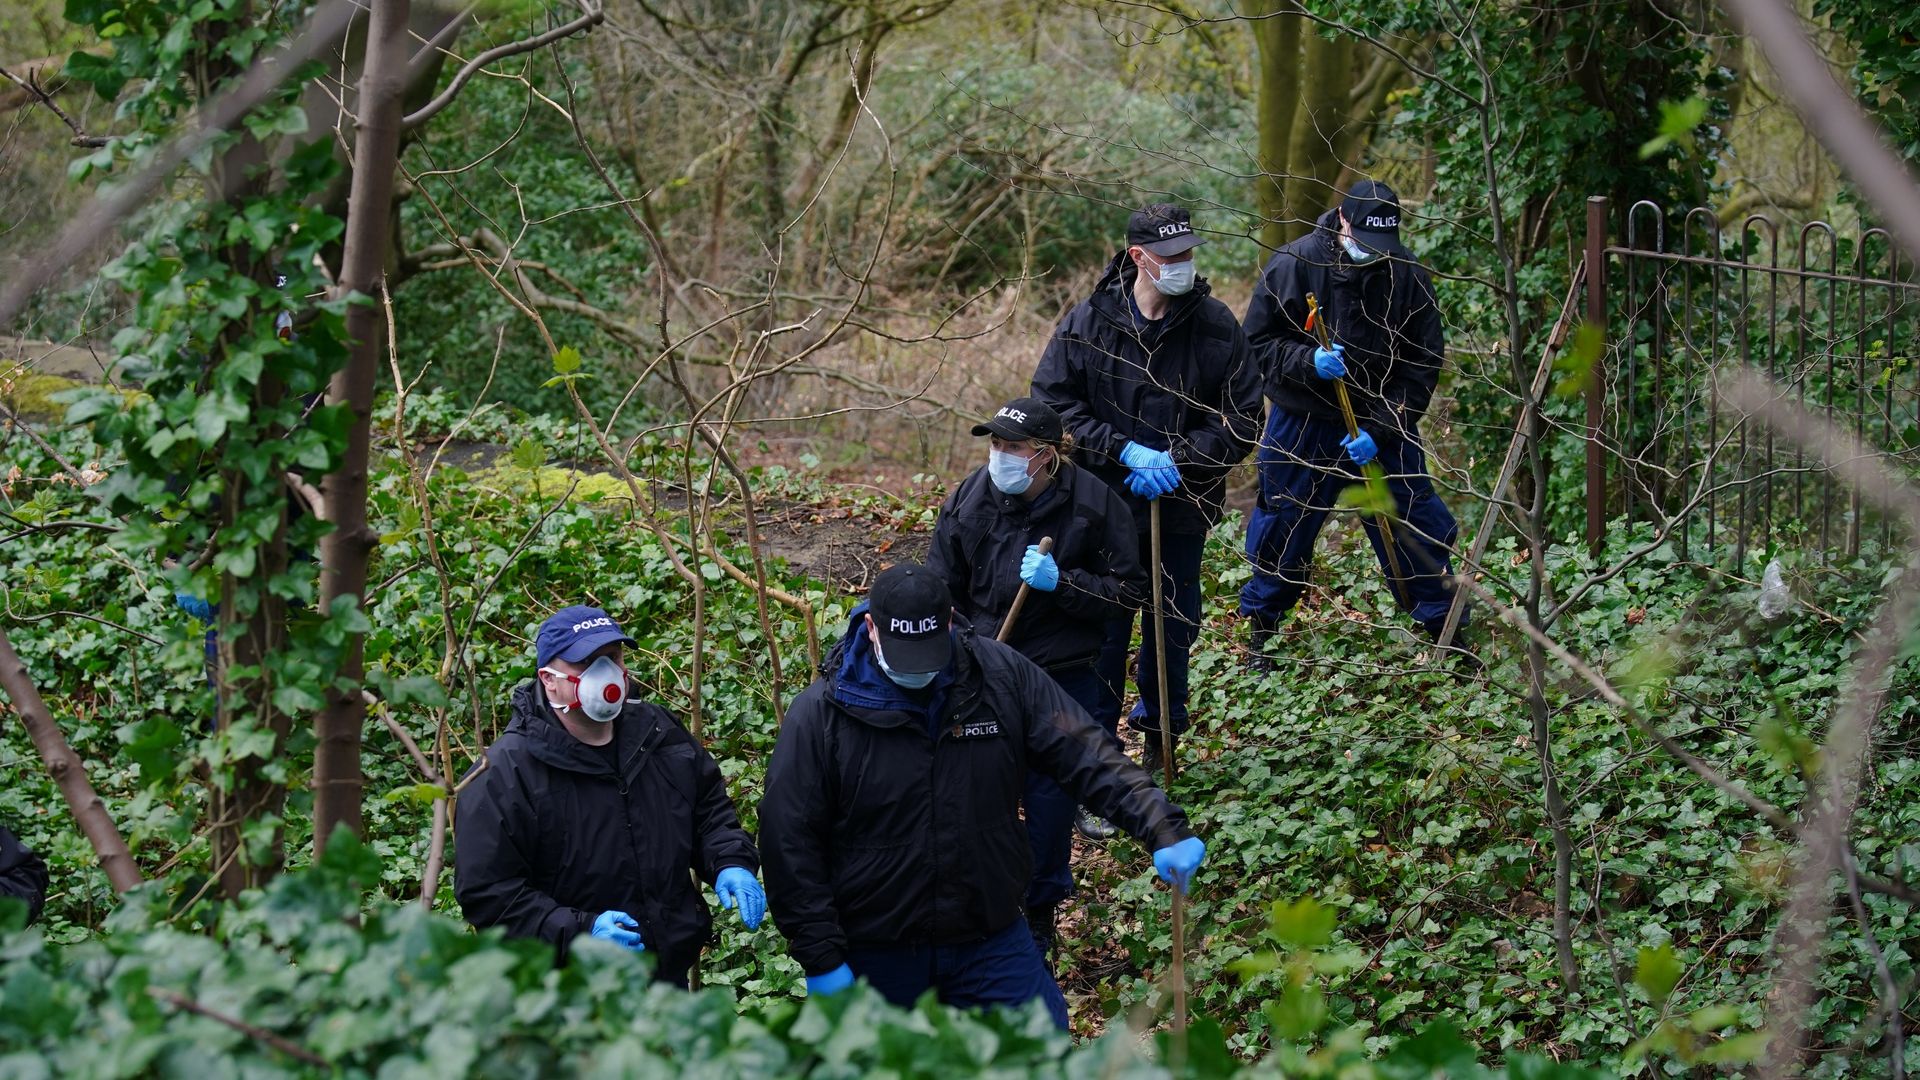 La scena del crimine in cui è stato ritrovato un busto umano viene riaperta settimane dopo la scoperta